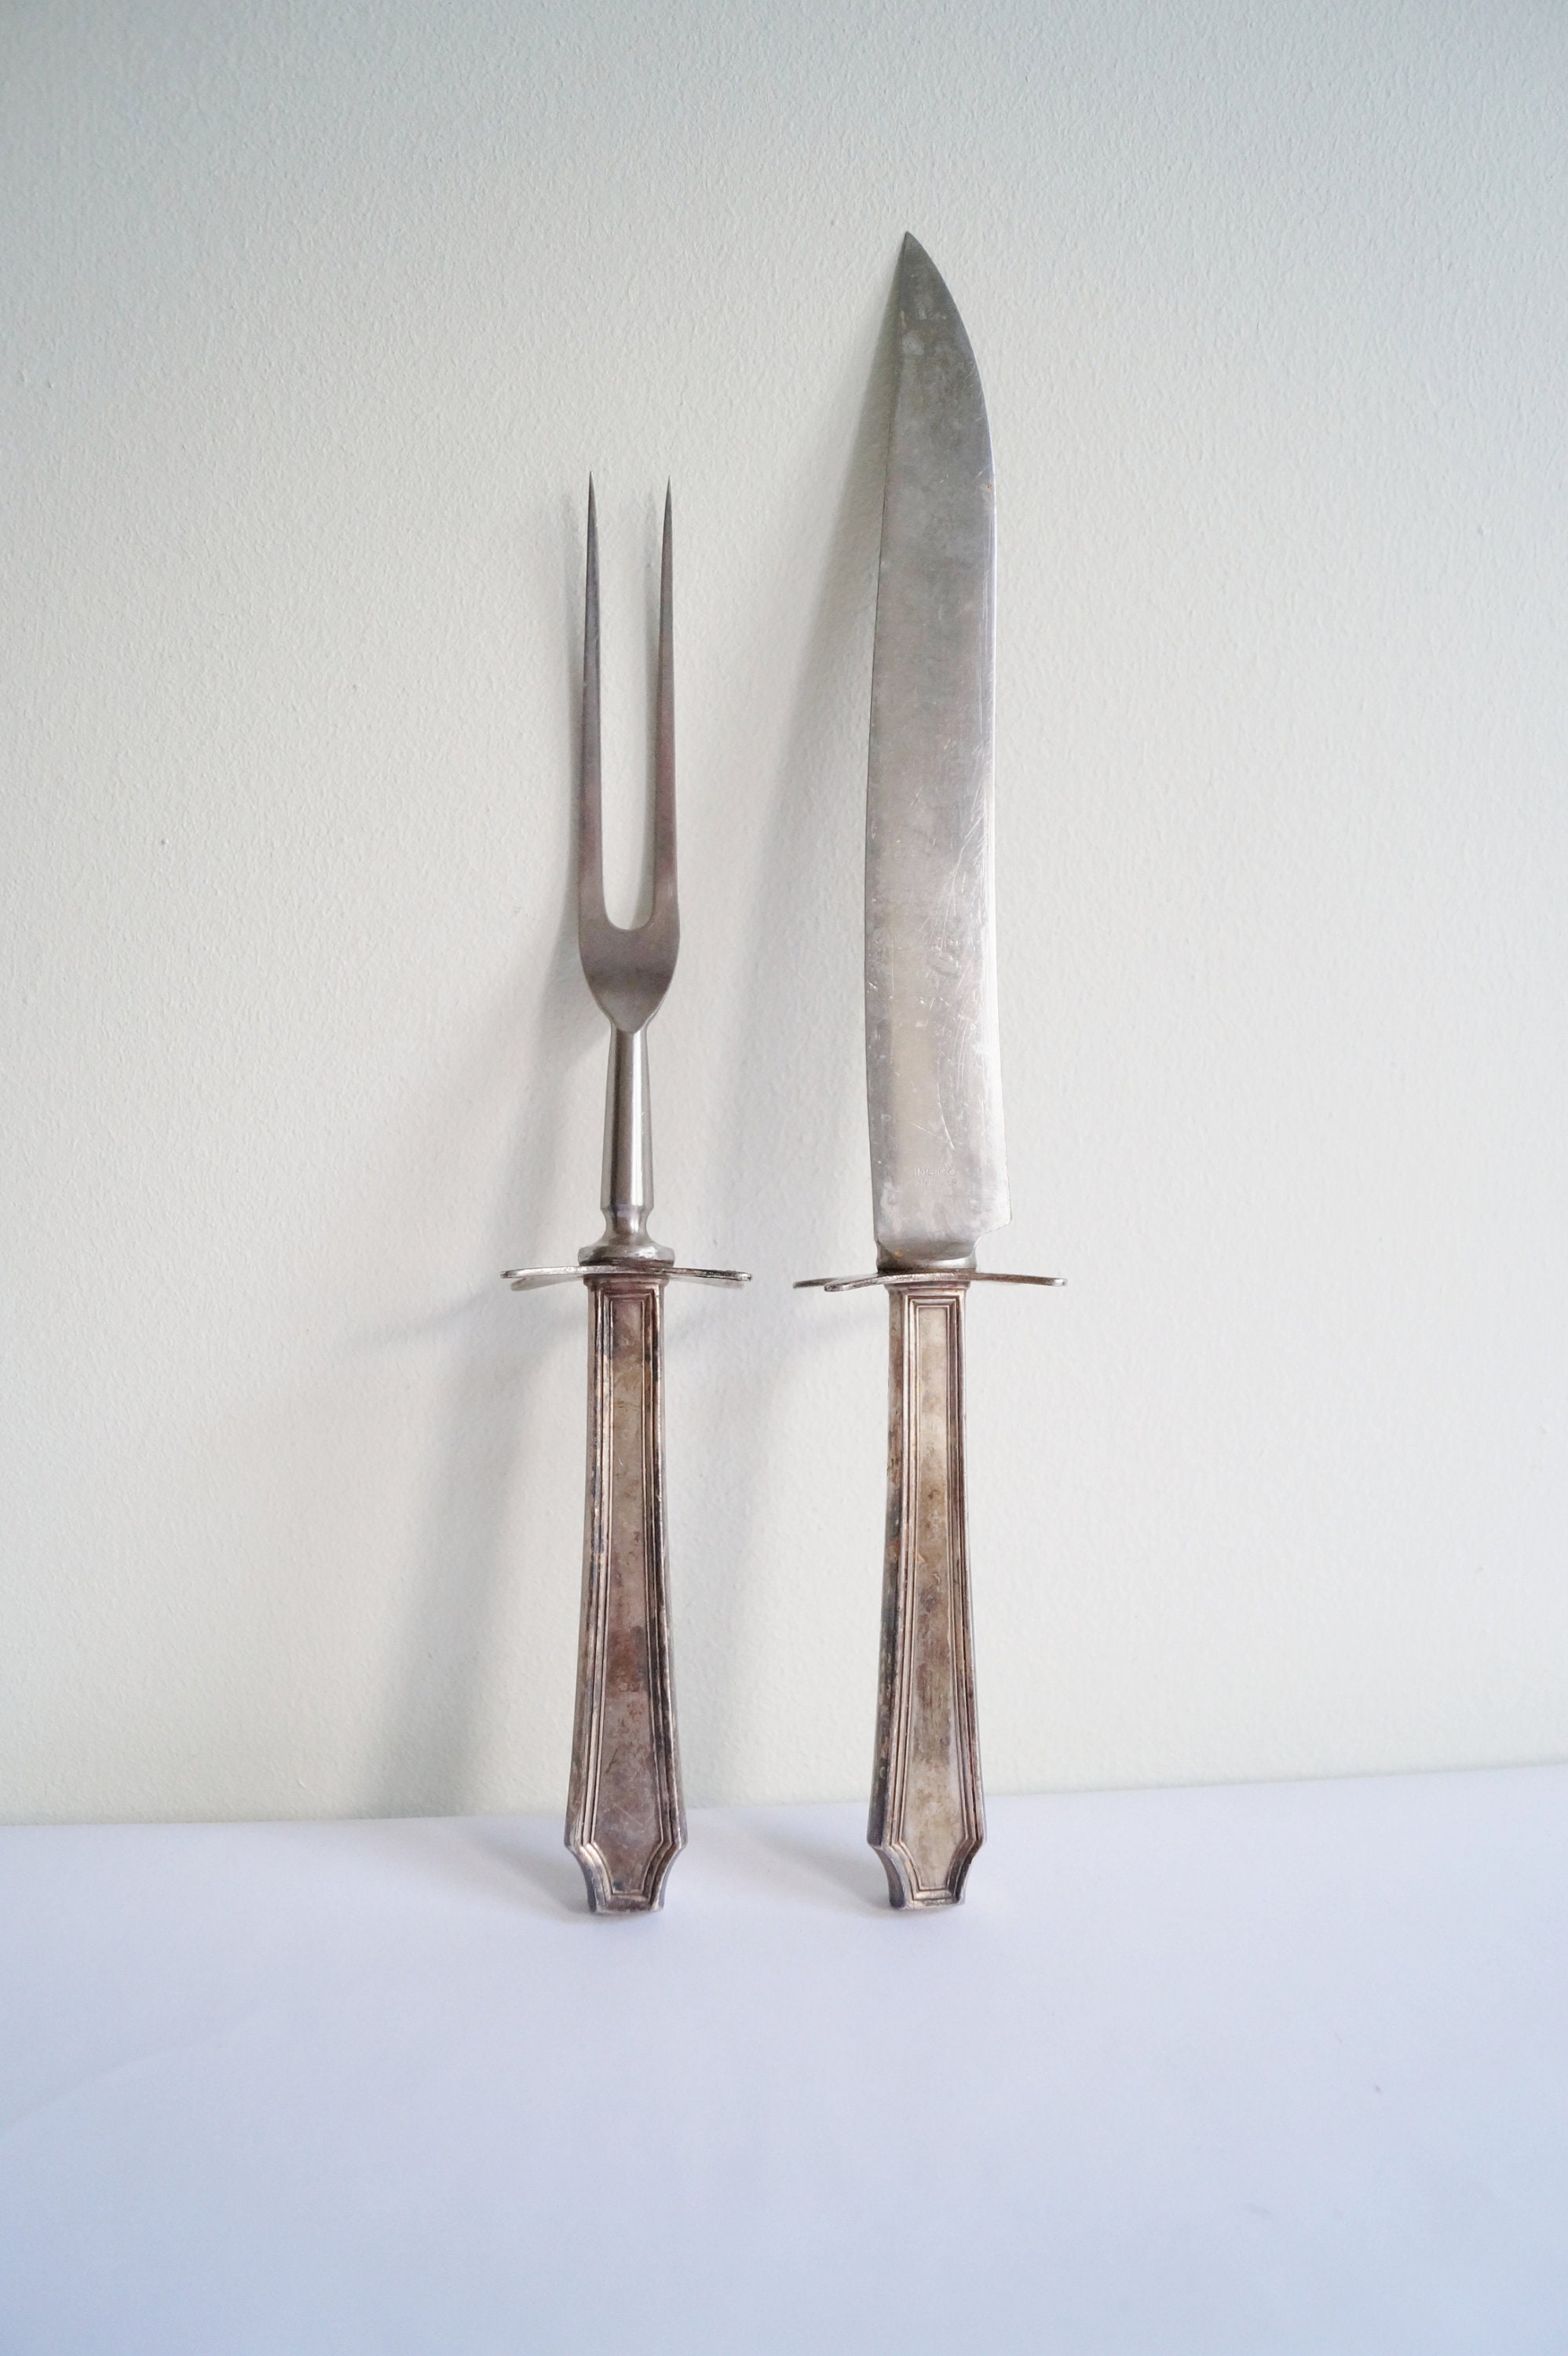 Old Carving Set Fork Knife Sharpener LEE'S Dragon Handles